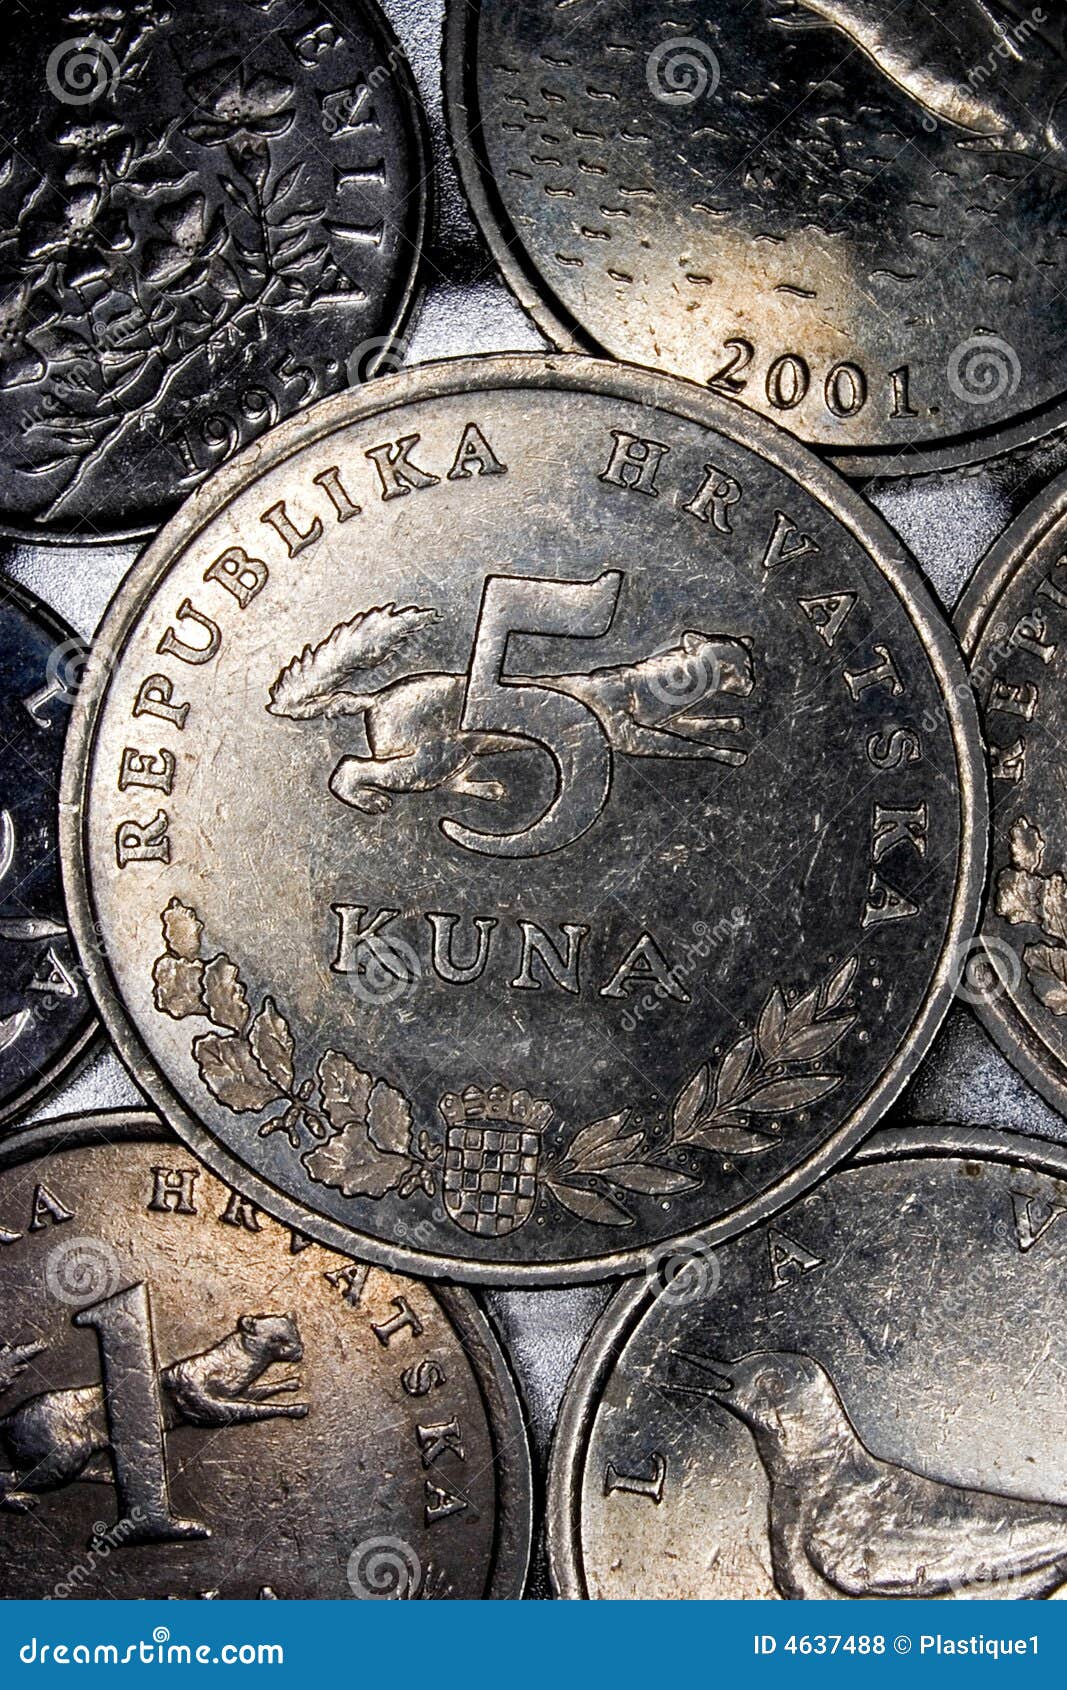 croatian kuna coins